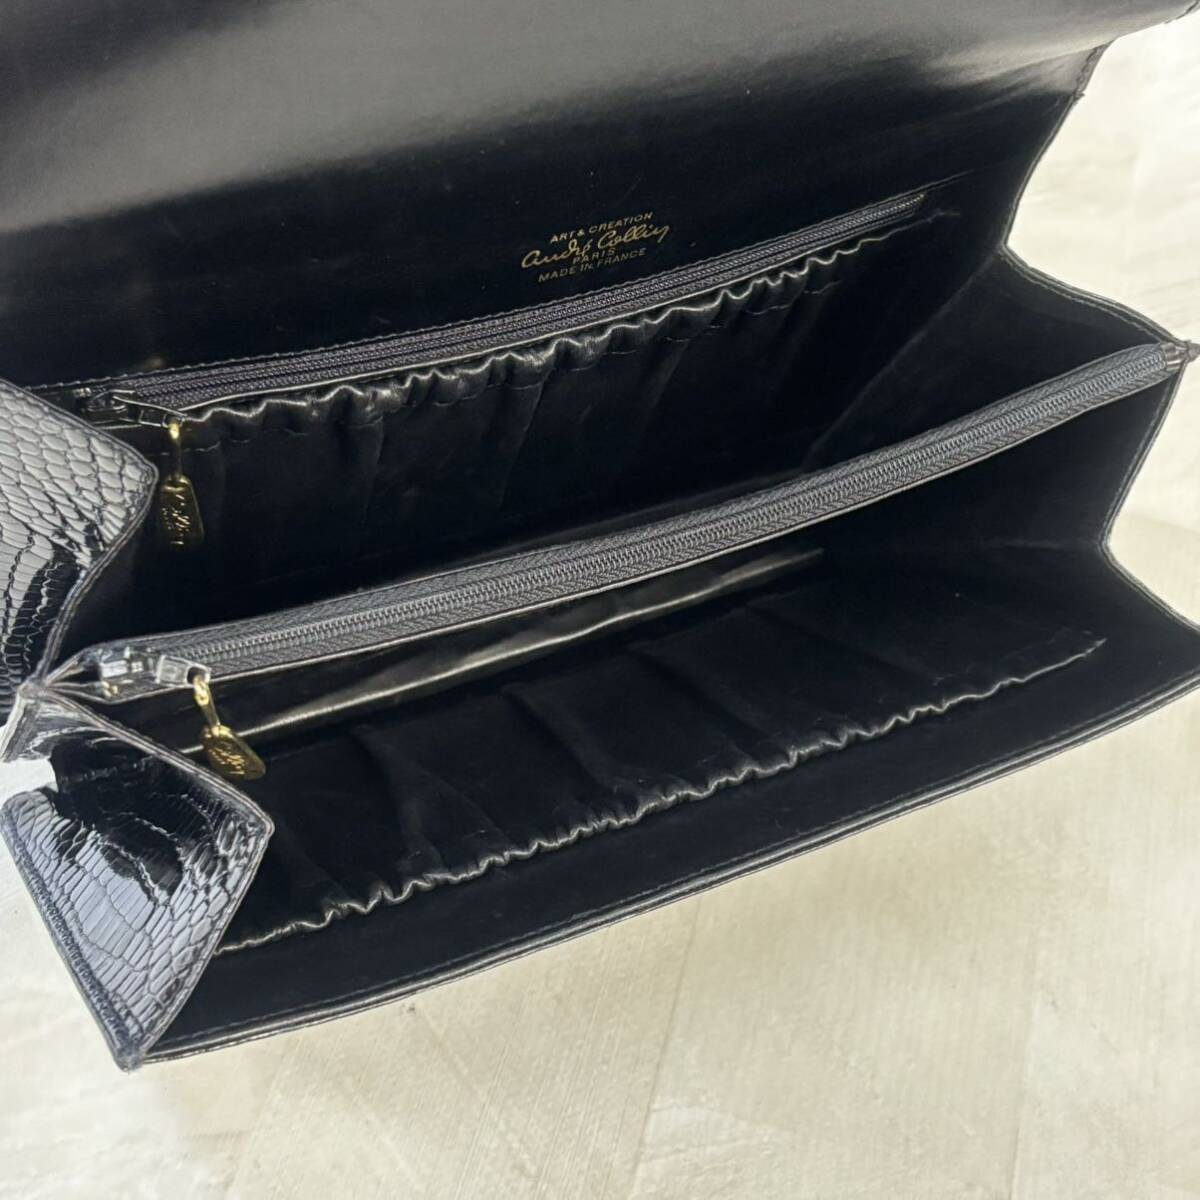 Colliy Paris ART&CREATION крокодил кожаная сумка ручная сумочка one руль Gold металлические принадлежности черный чёрный сумка 